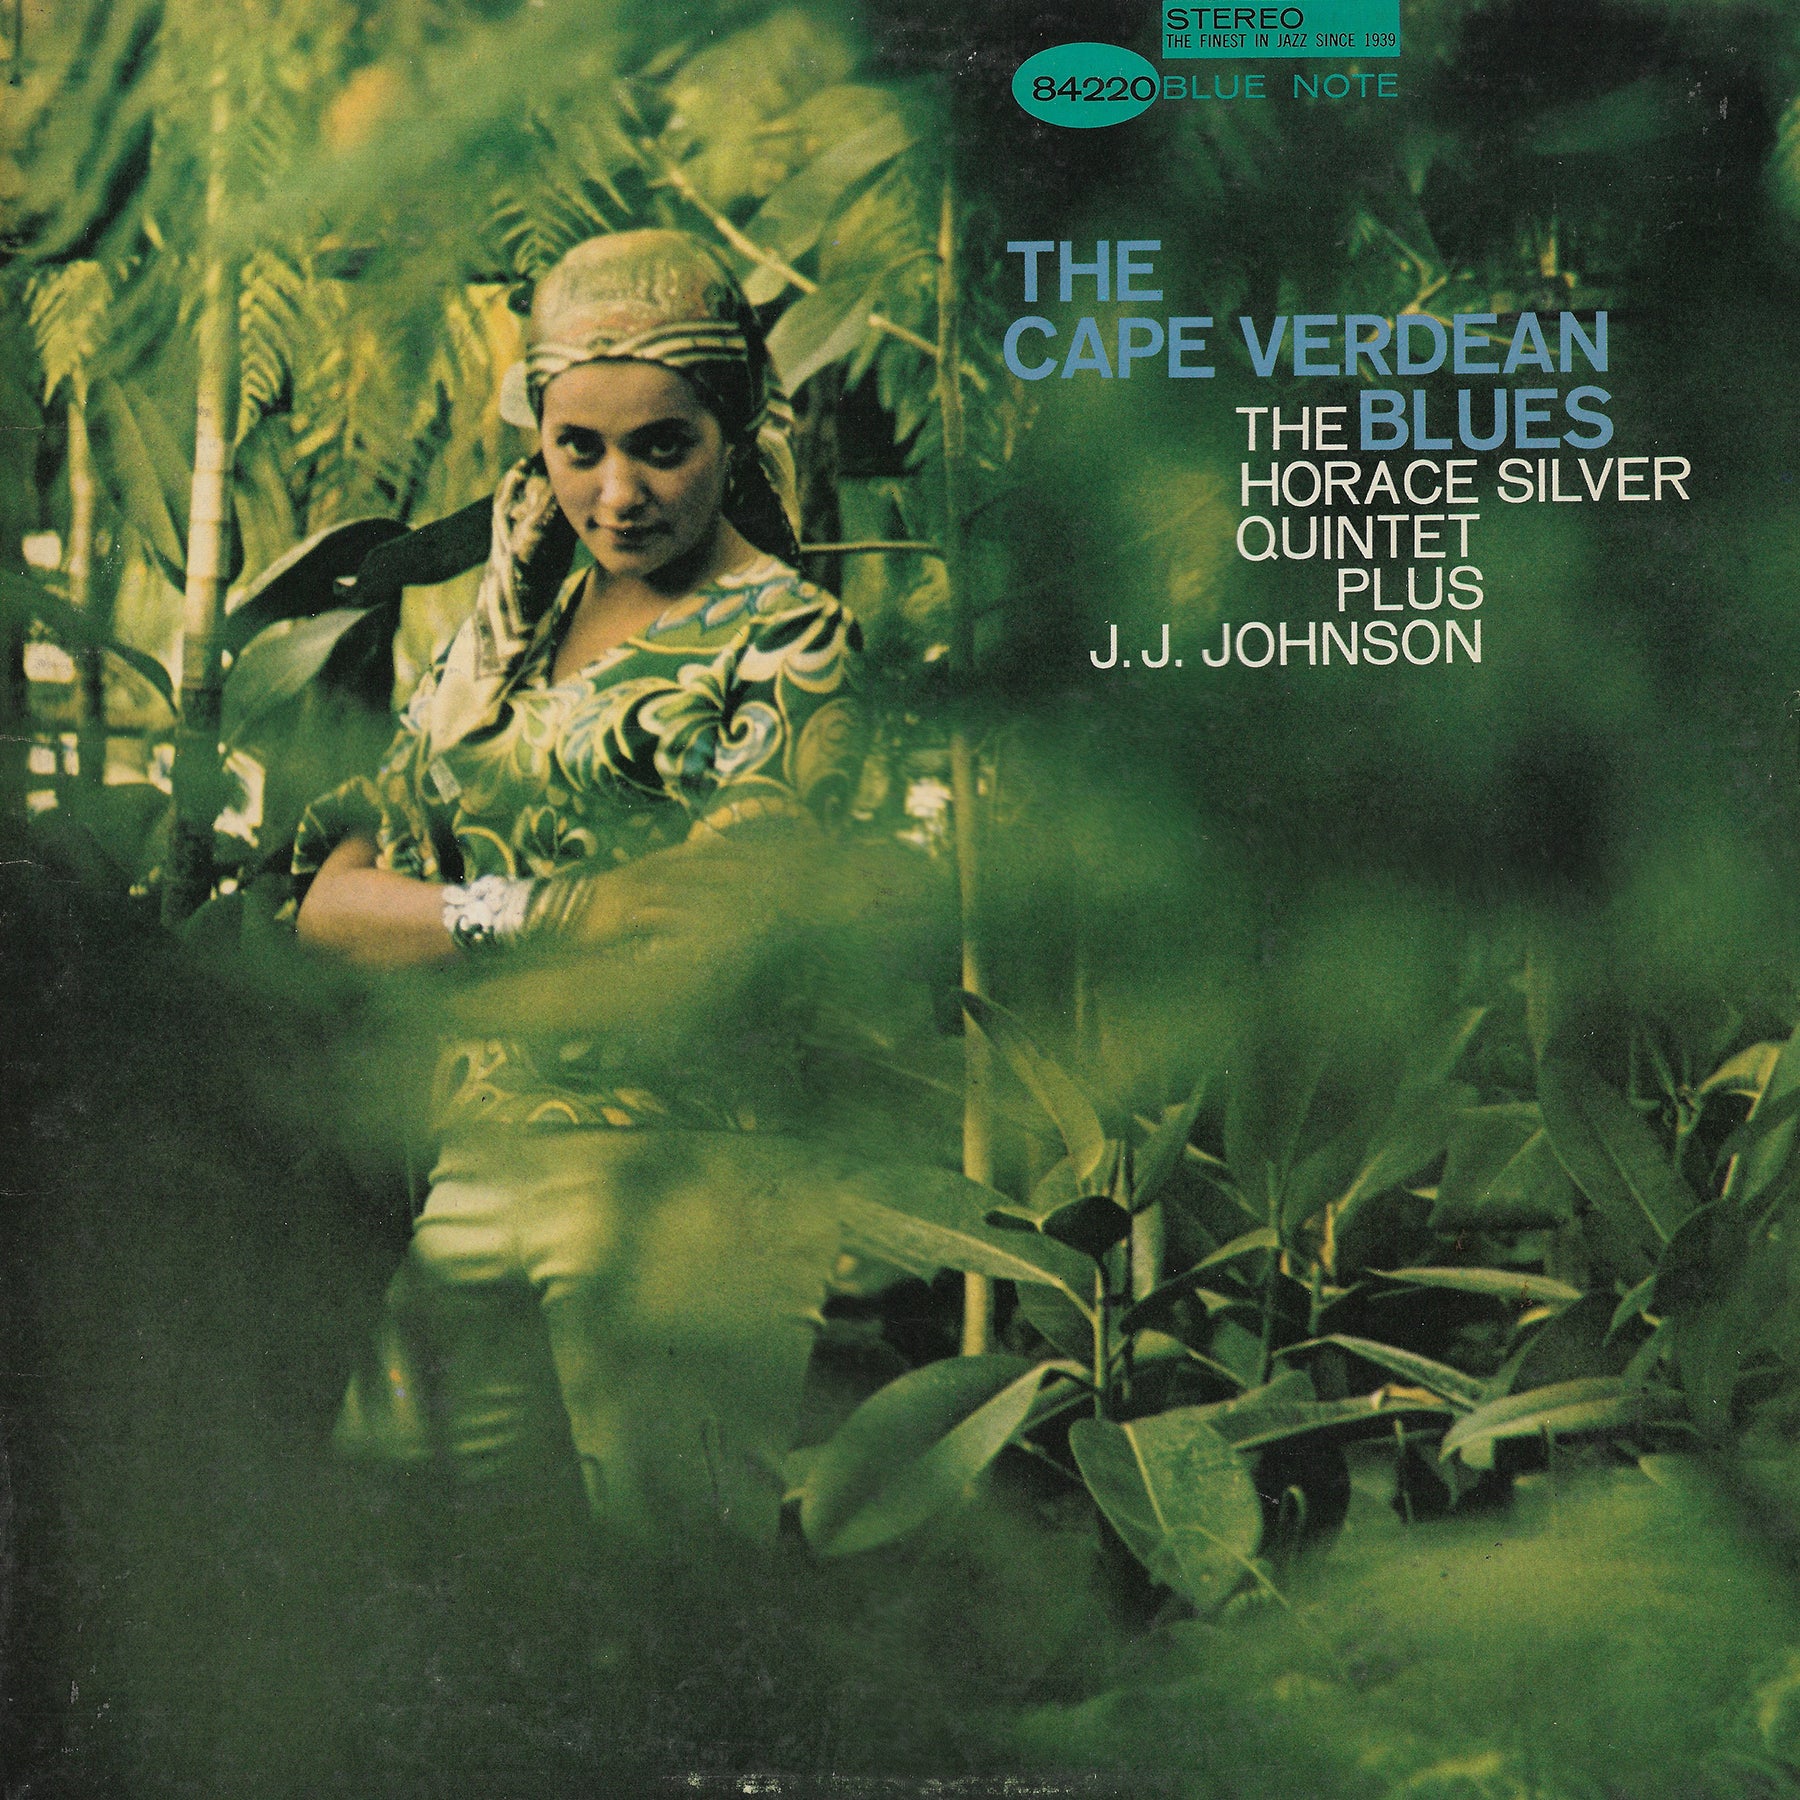 The Horace Silver Quintet Plus J.J. Johnson - The Cape Verdean Blues